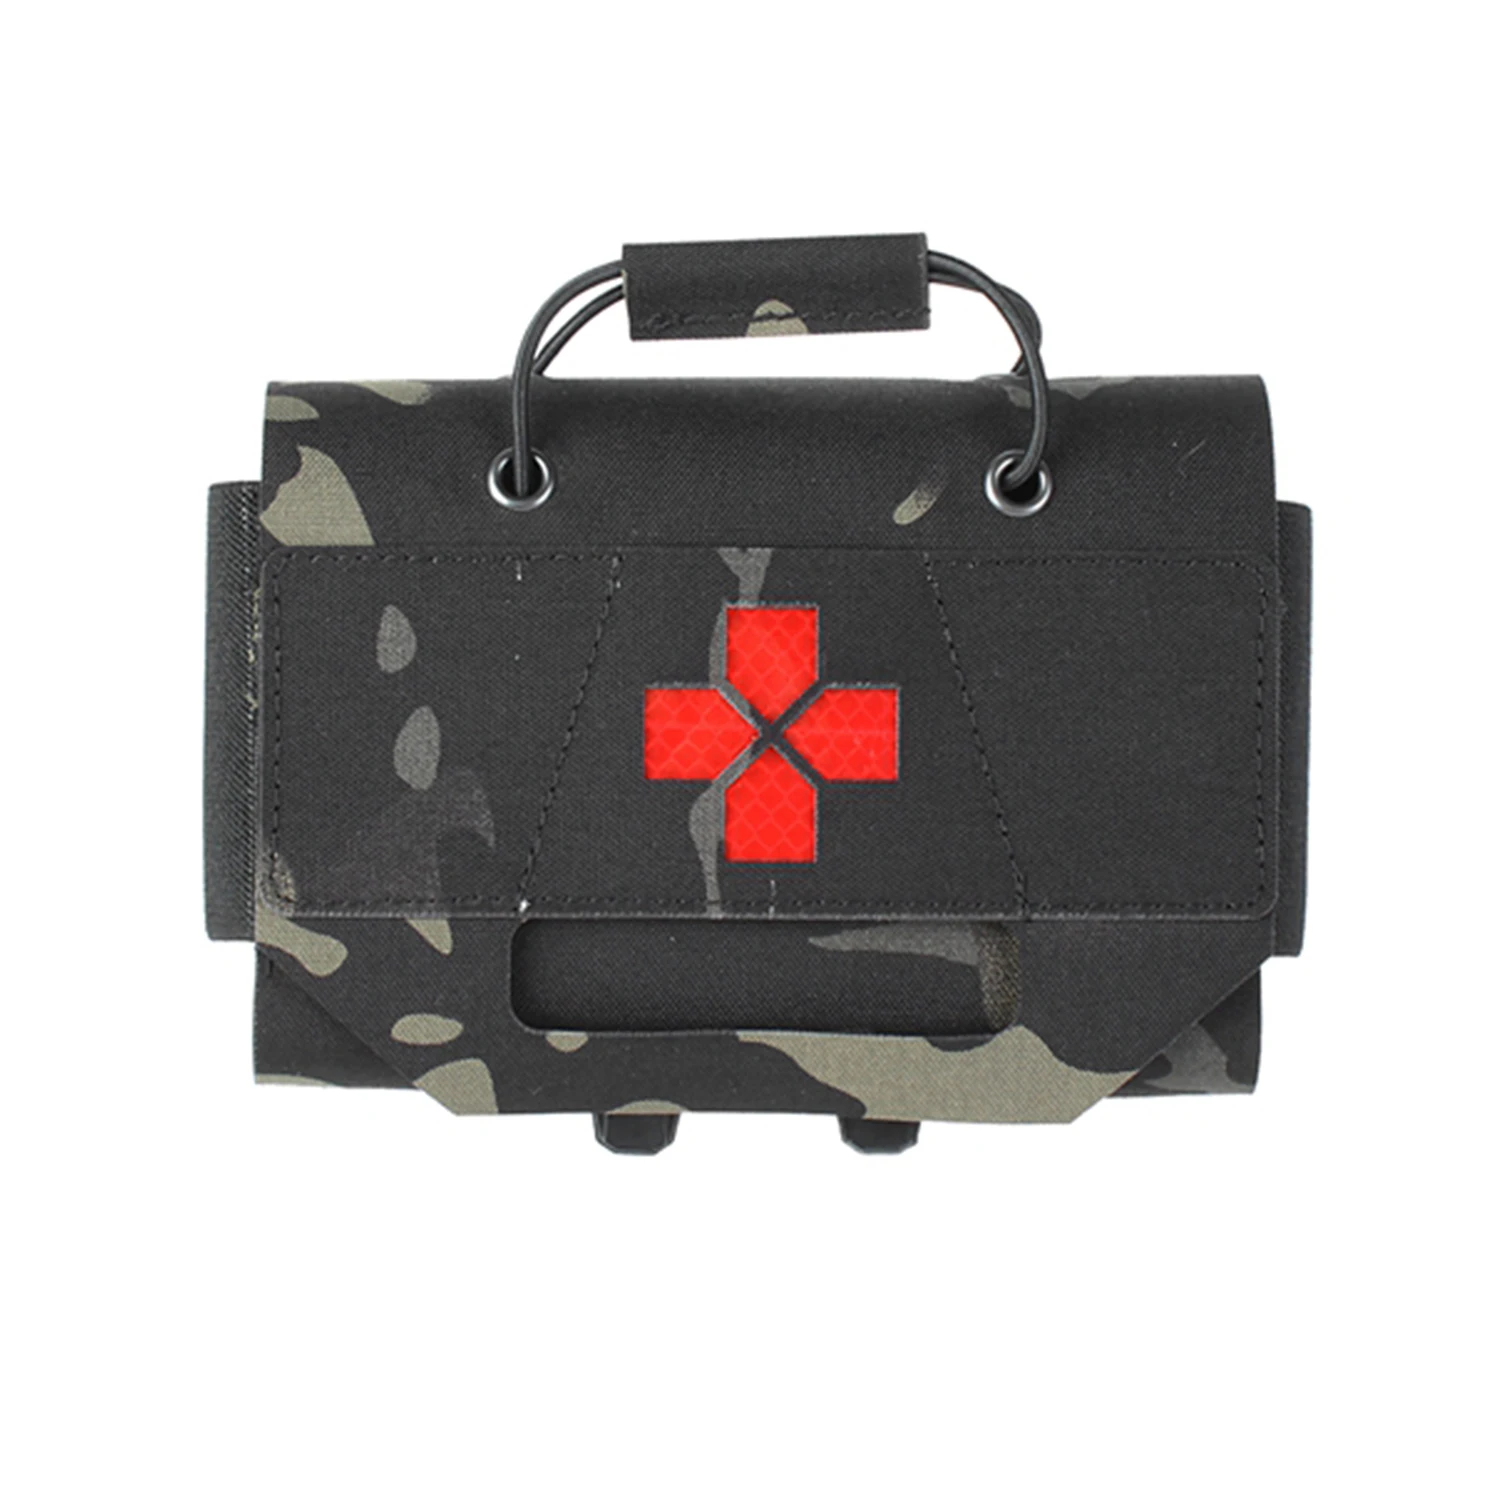 PEWTAC MMP minimalista cache kit médico portátil tactical vest acessórios kit de primeiros socorros, homens e mulheres, jogos de guerra, caça exterior Imagem 2